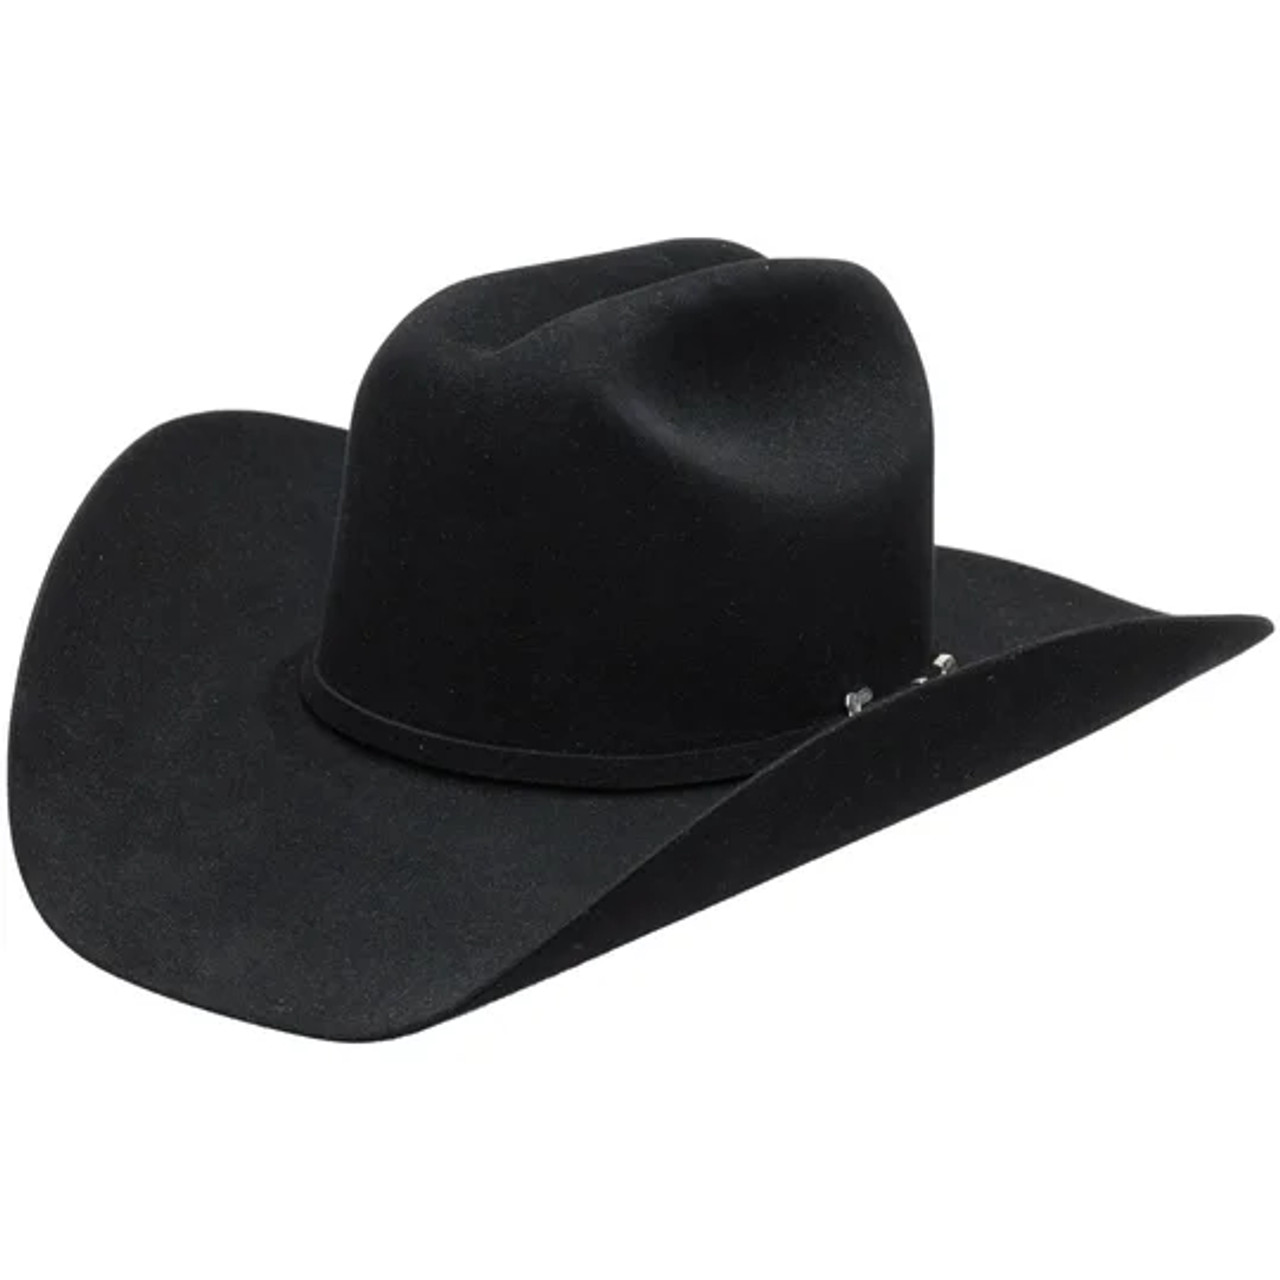 Resistol Felt Hats - 20X Black Gold - Billy's Western Wear